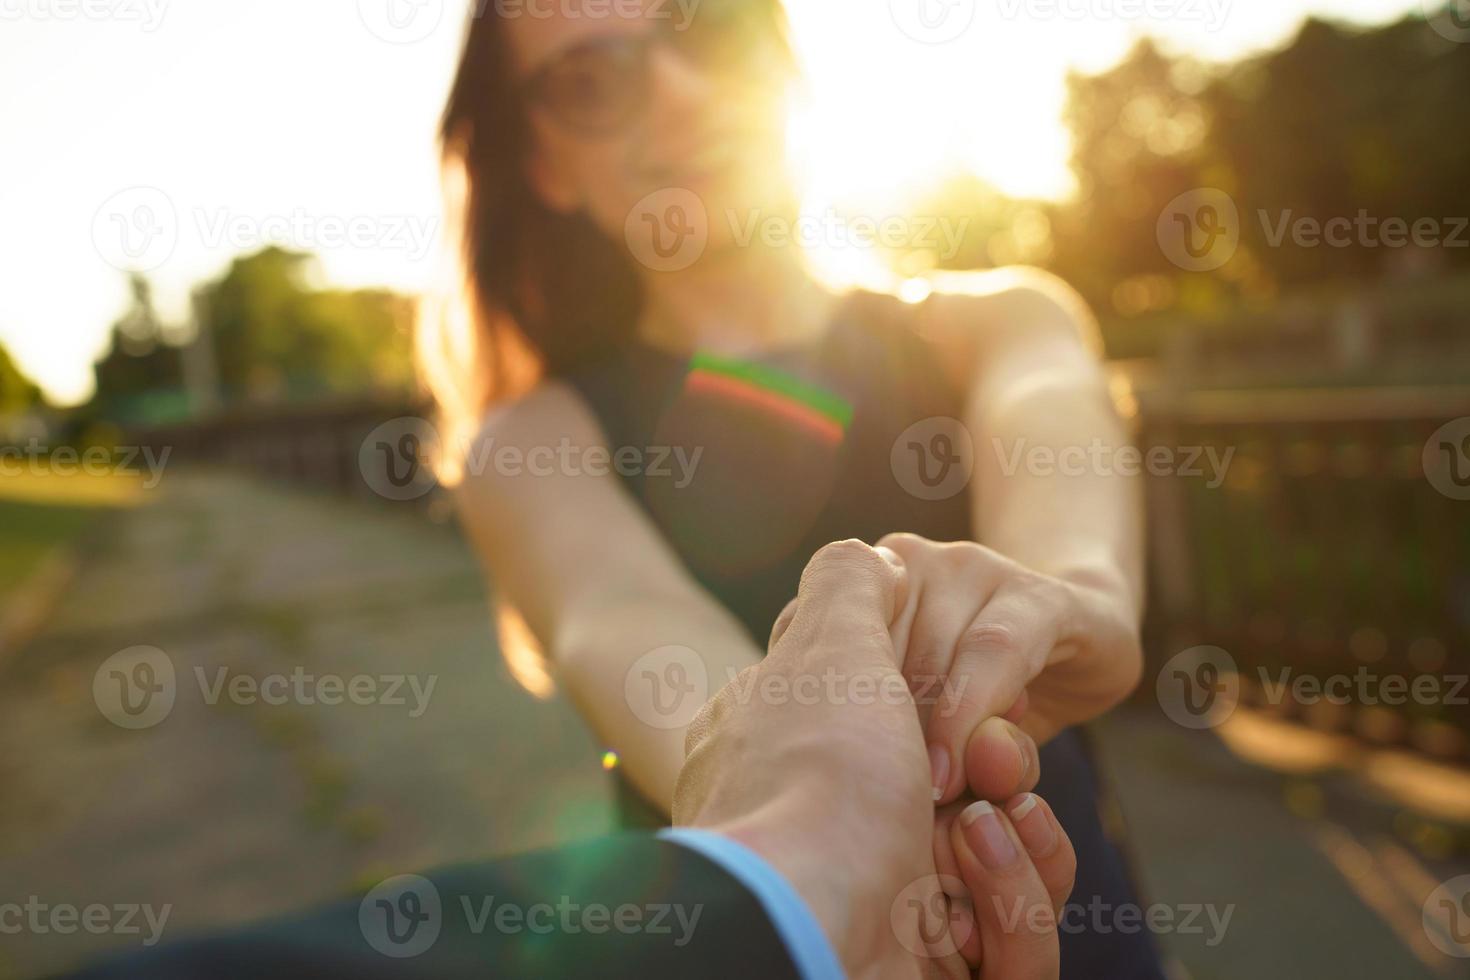 Folgen mich - - glücklich jung Frau ziehen Leute Hand - - Hand im Hand Gehen auf ein hell sonnig Tag foto